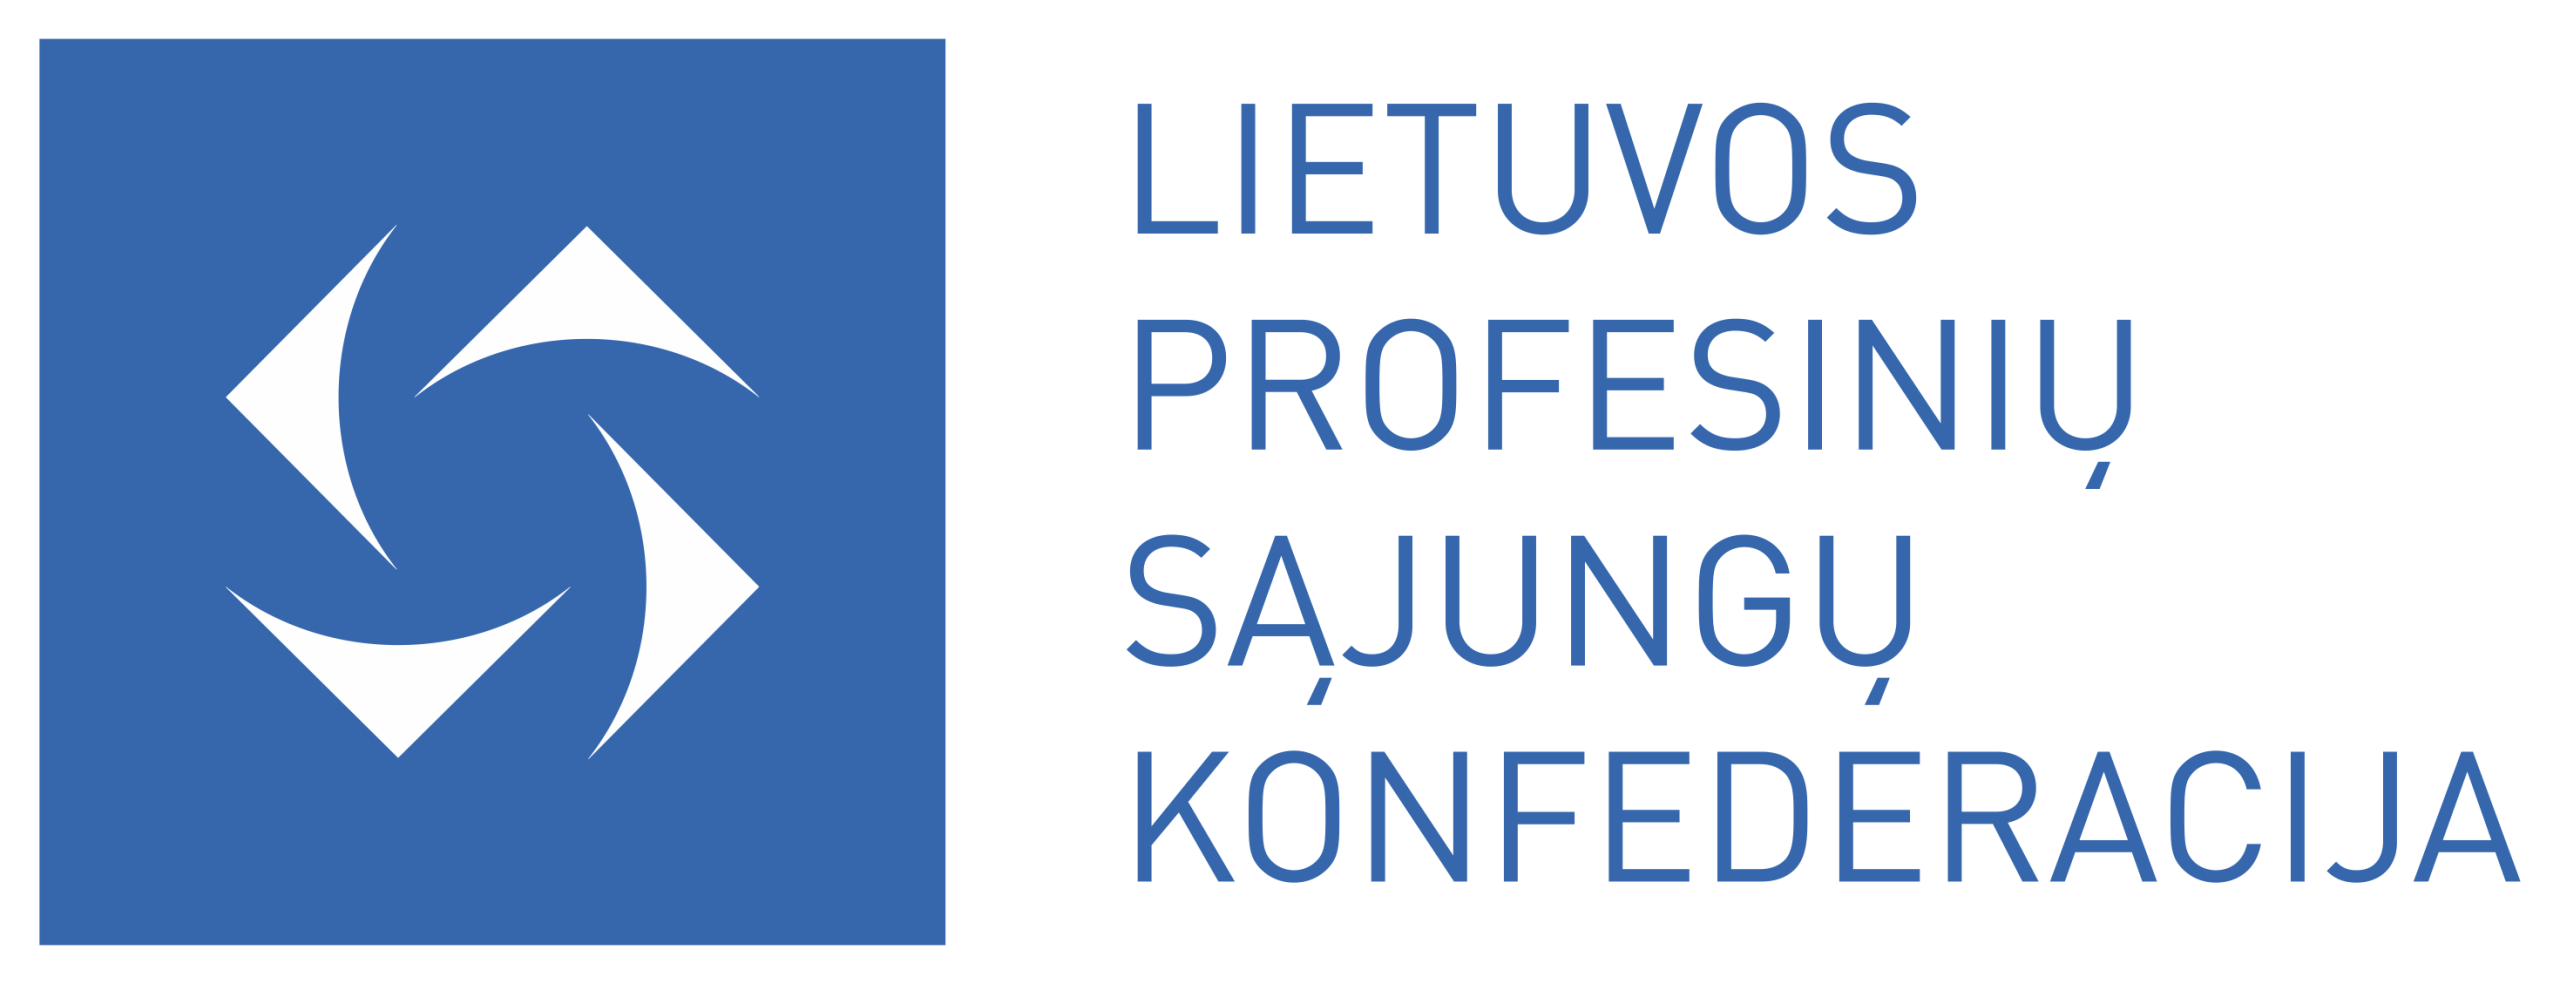 Lietuvos profesinių sąjungų konfederacija